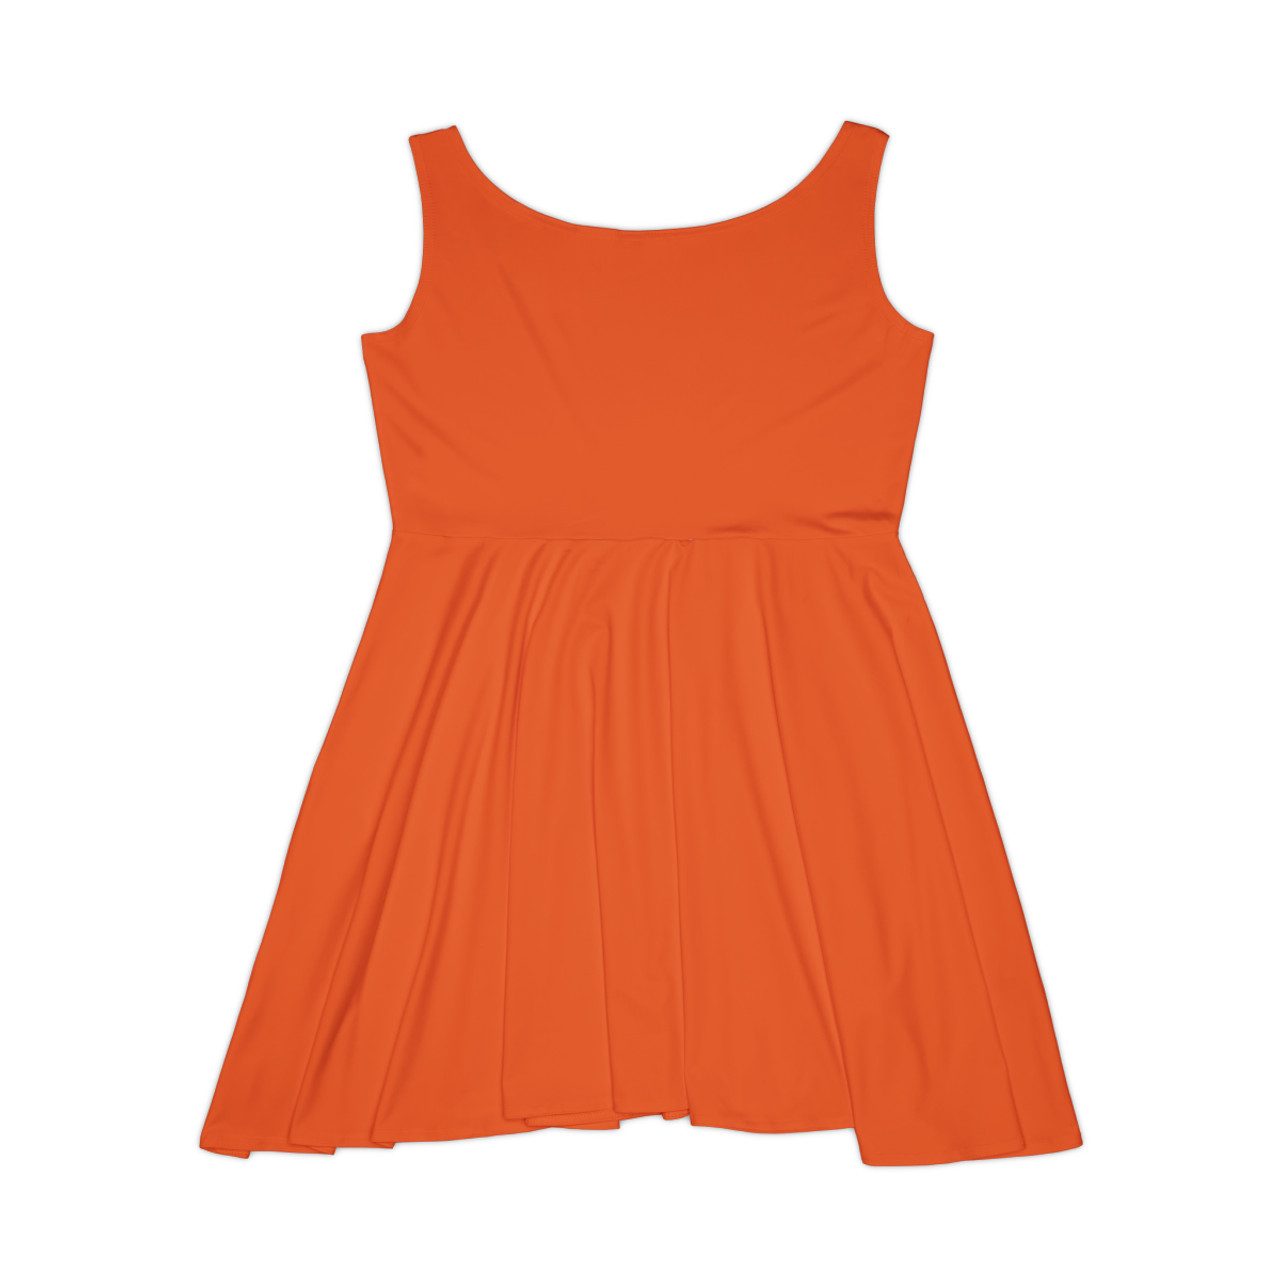 Women's Orange Skater Dress- Left Side BHS Seal